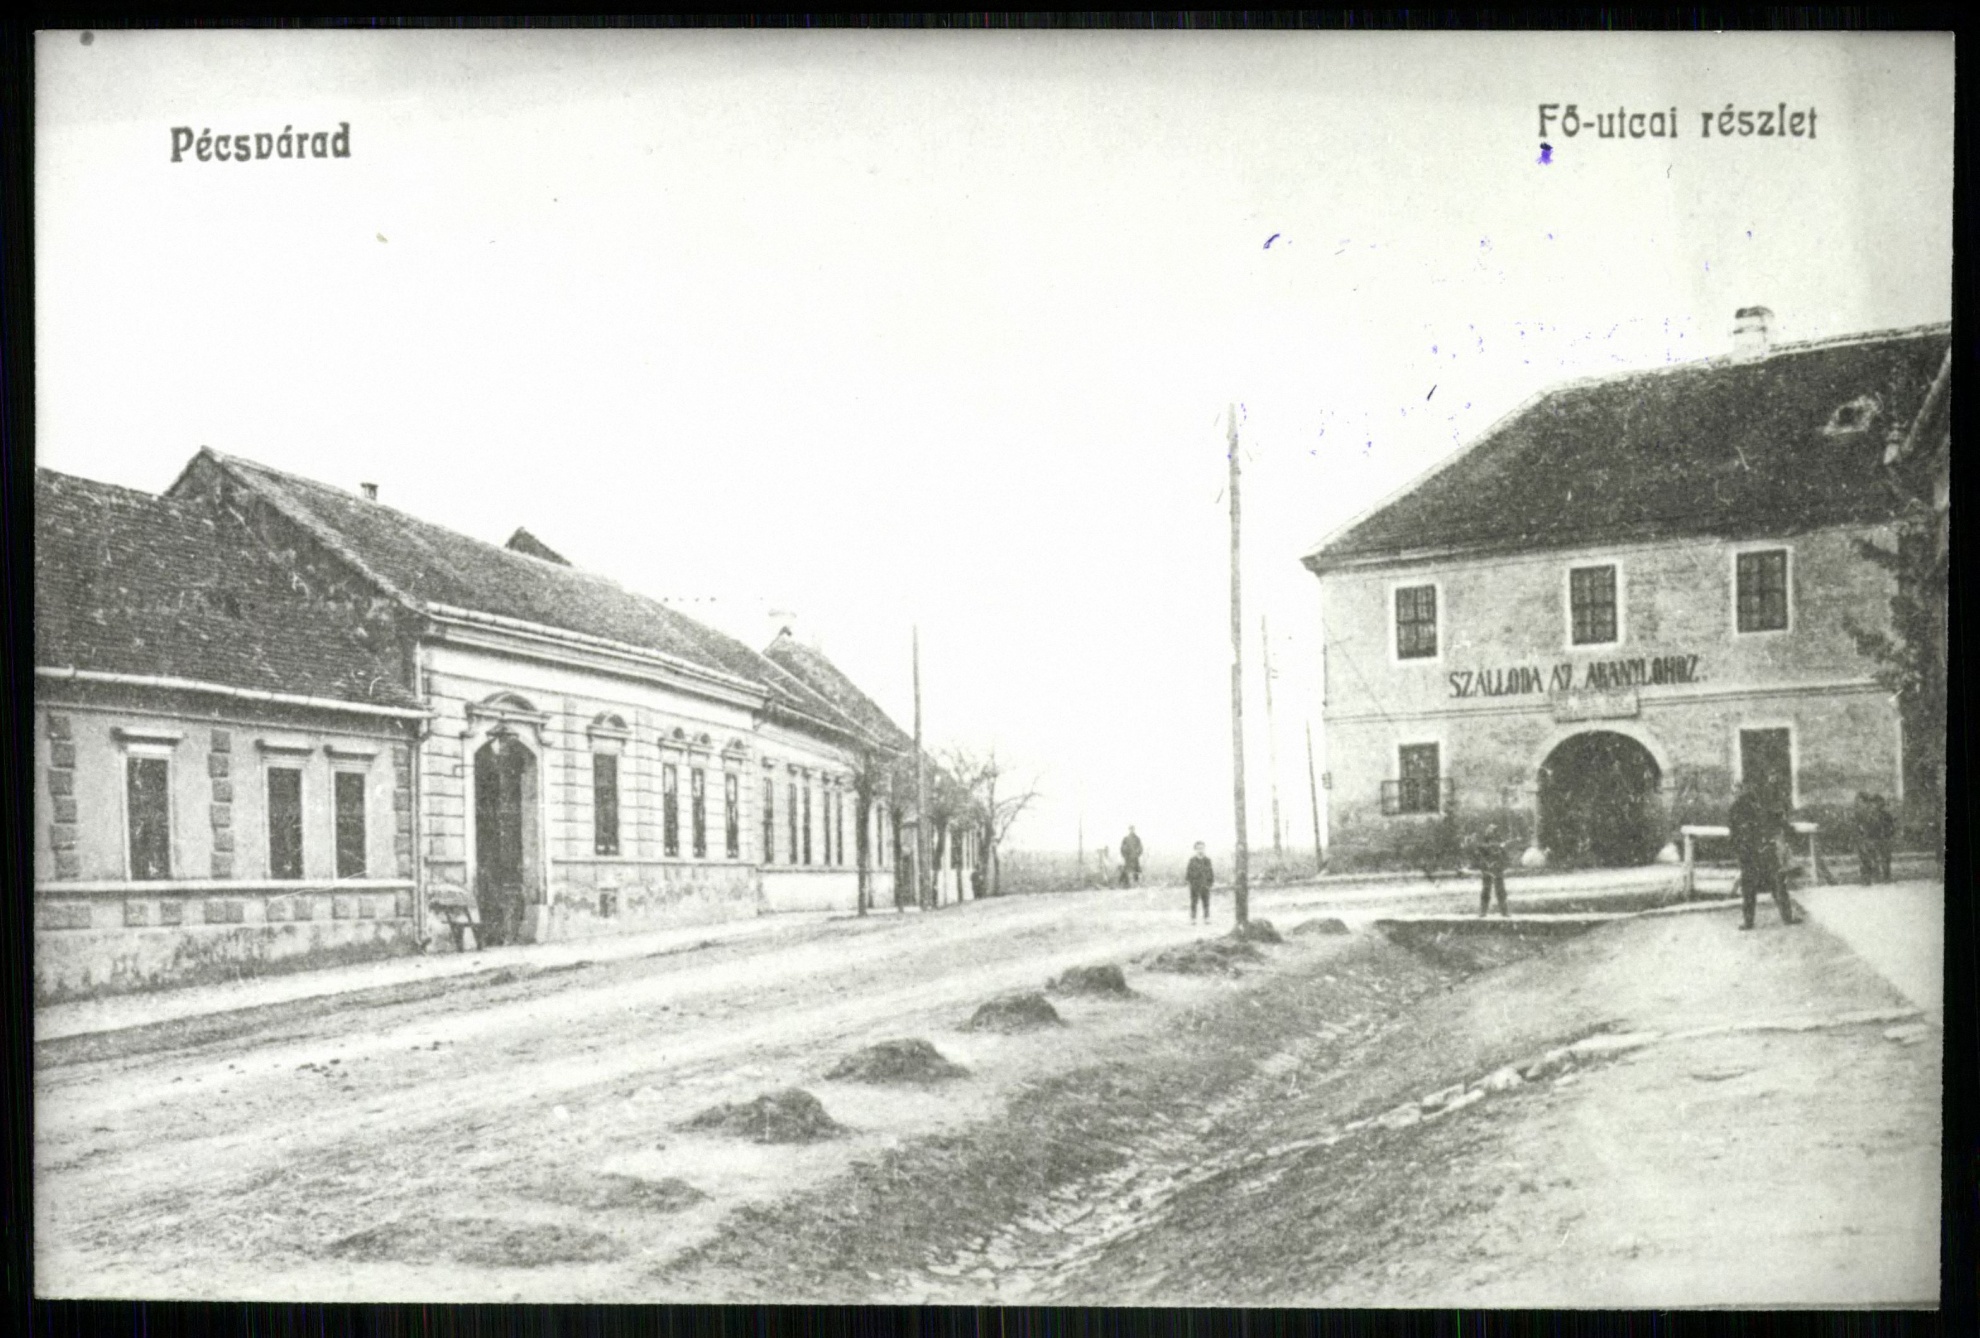 Pécsvárad Fő utcai részlet. Szálloda az Aranylóhoz (Magyar Kereskedelmi és Vendéglátóipari Múzeum CC BY-NC-ND)